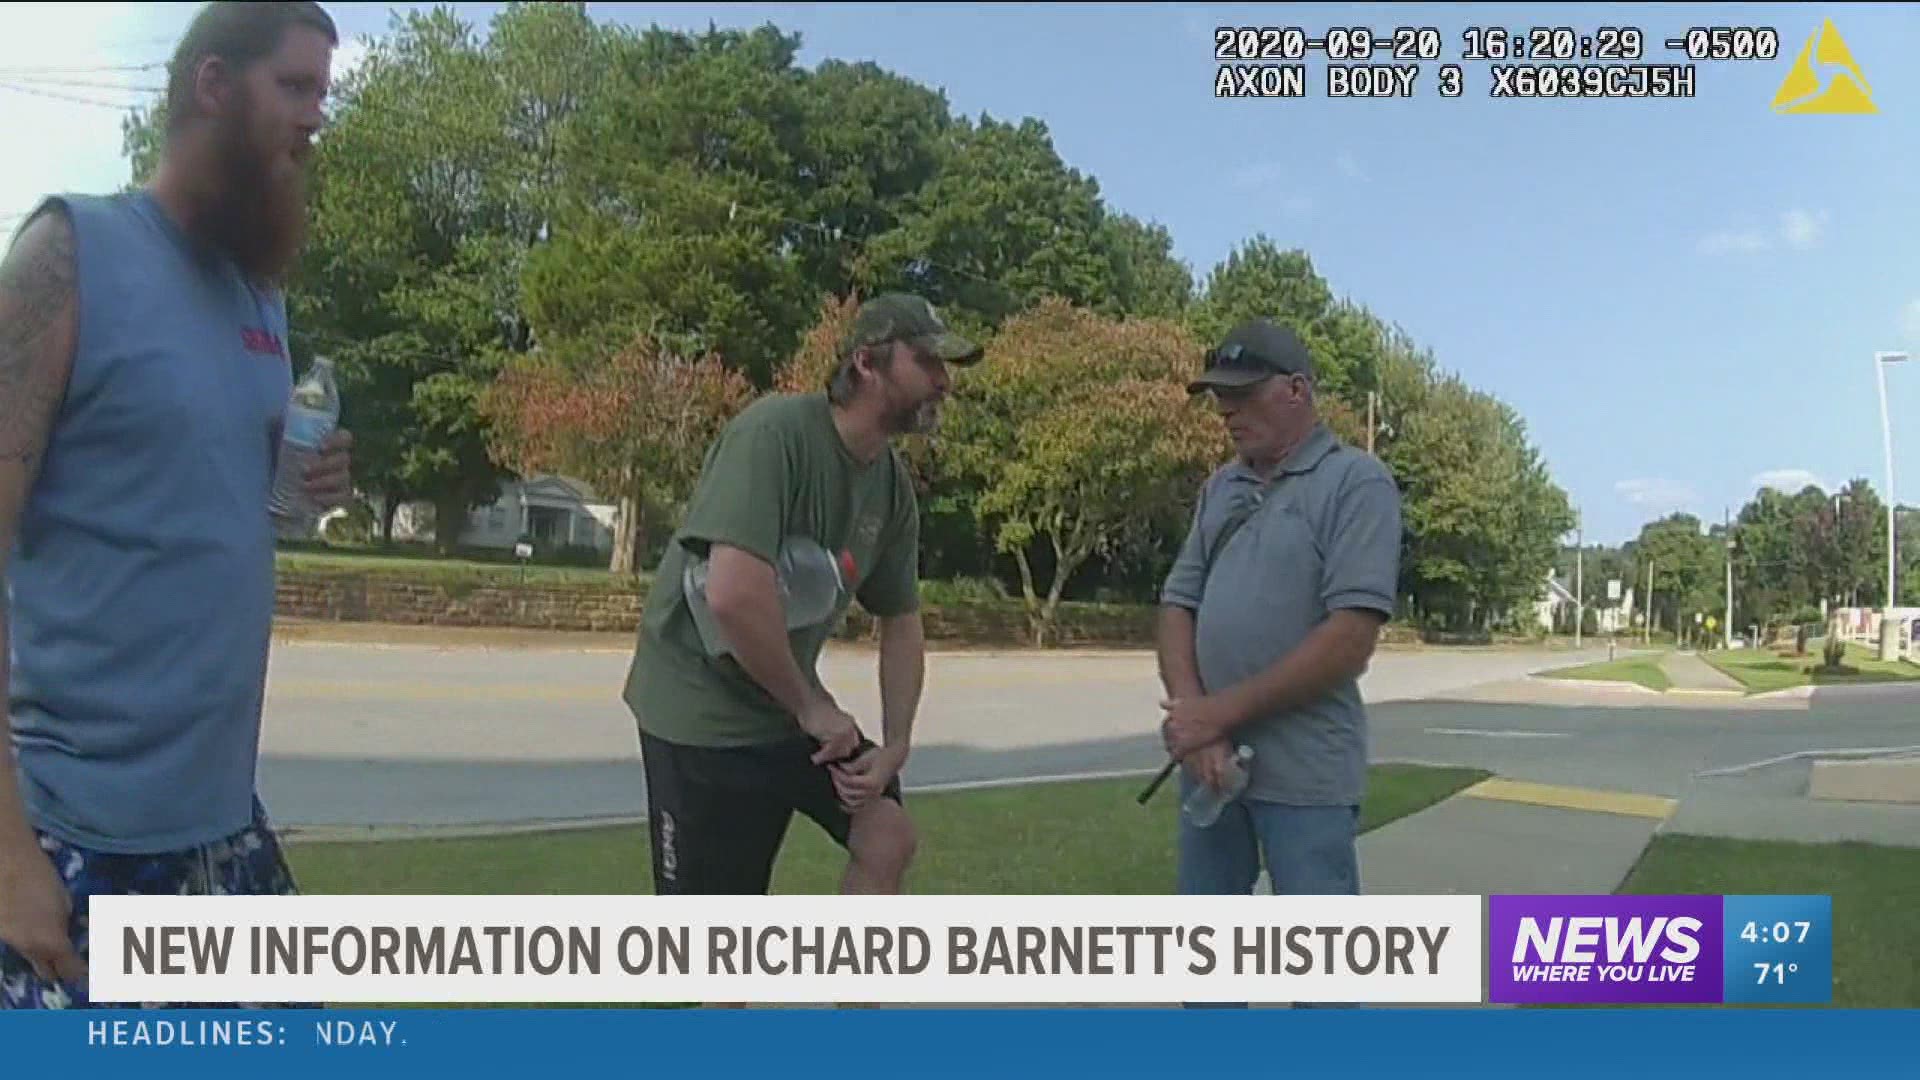 Police were called to investigate Richard Barnett's behaviors multiple times in 2020.